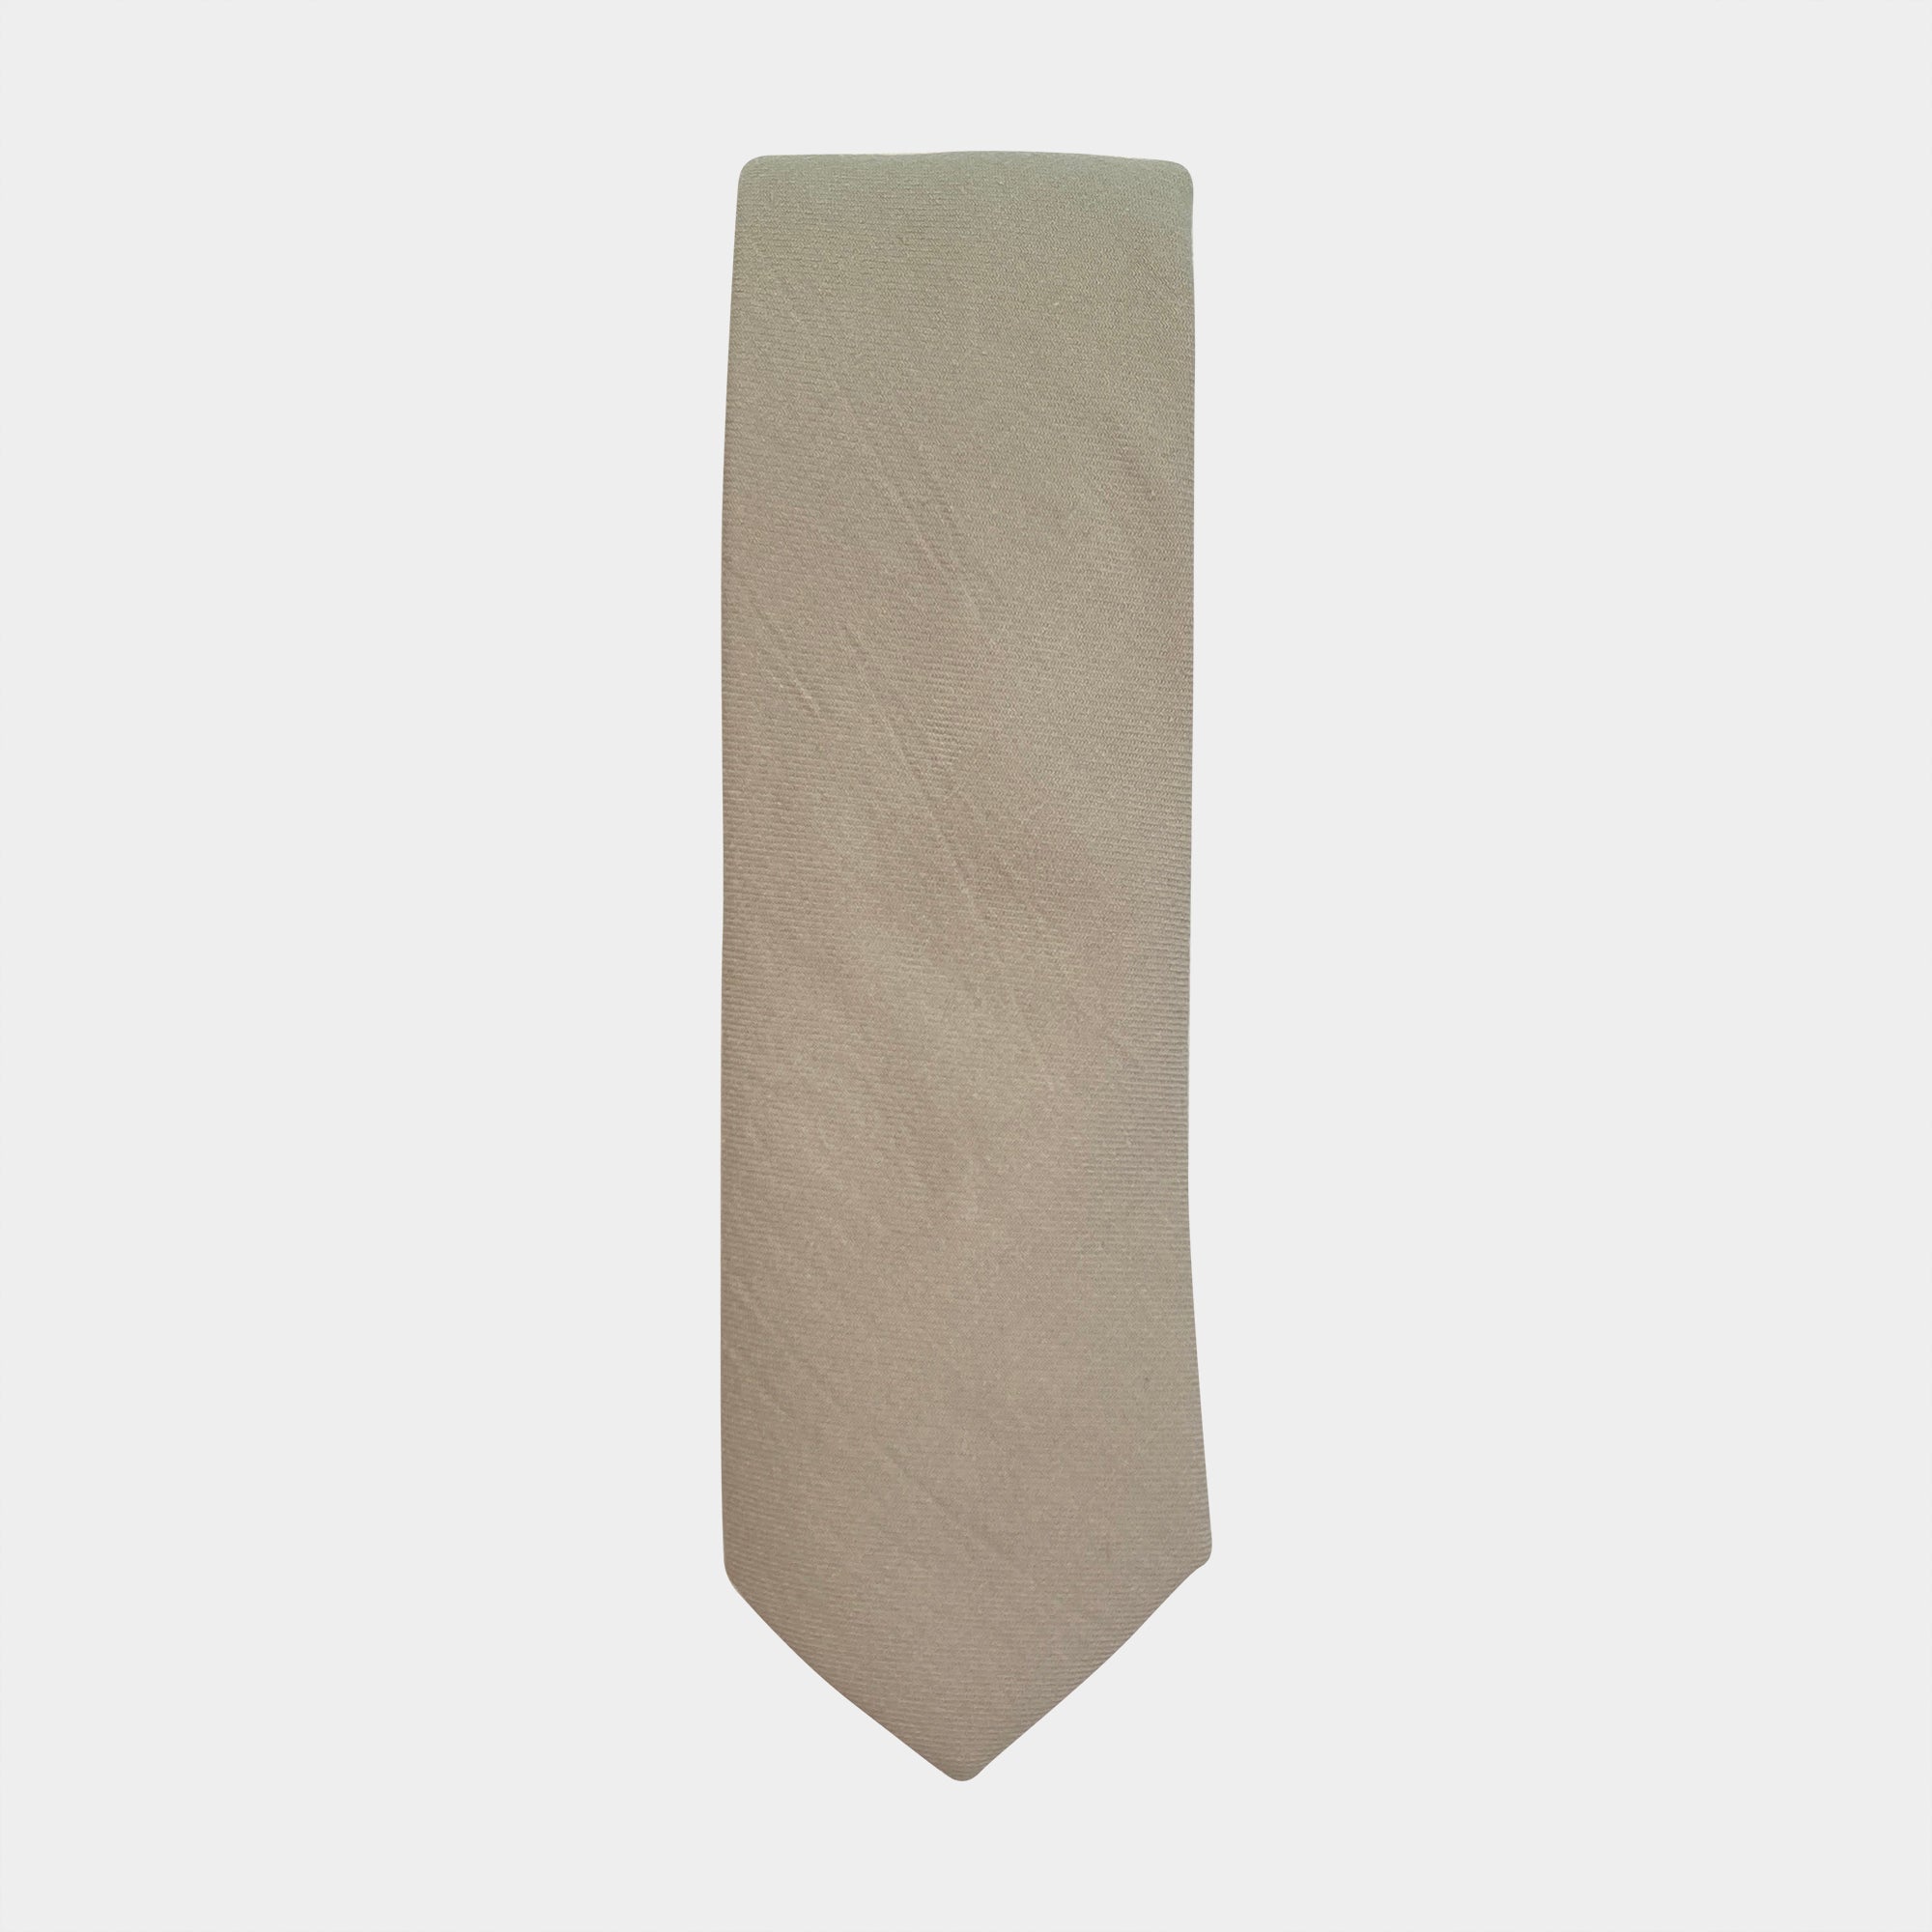 HEAPS - Men's Tie